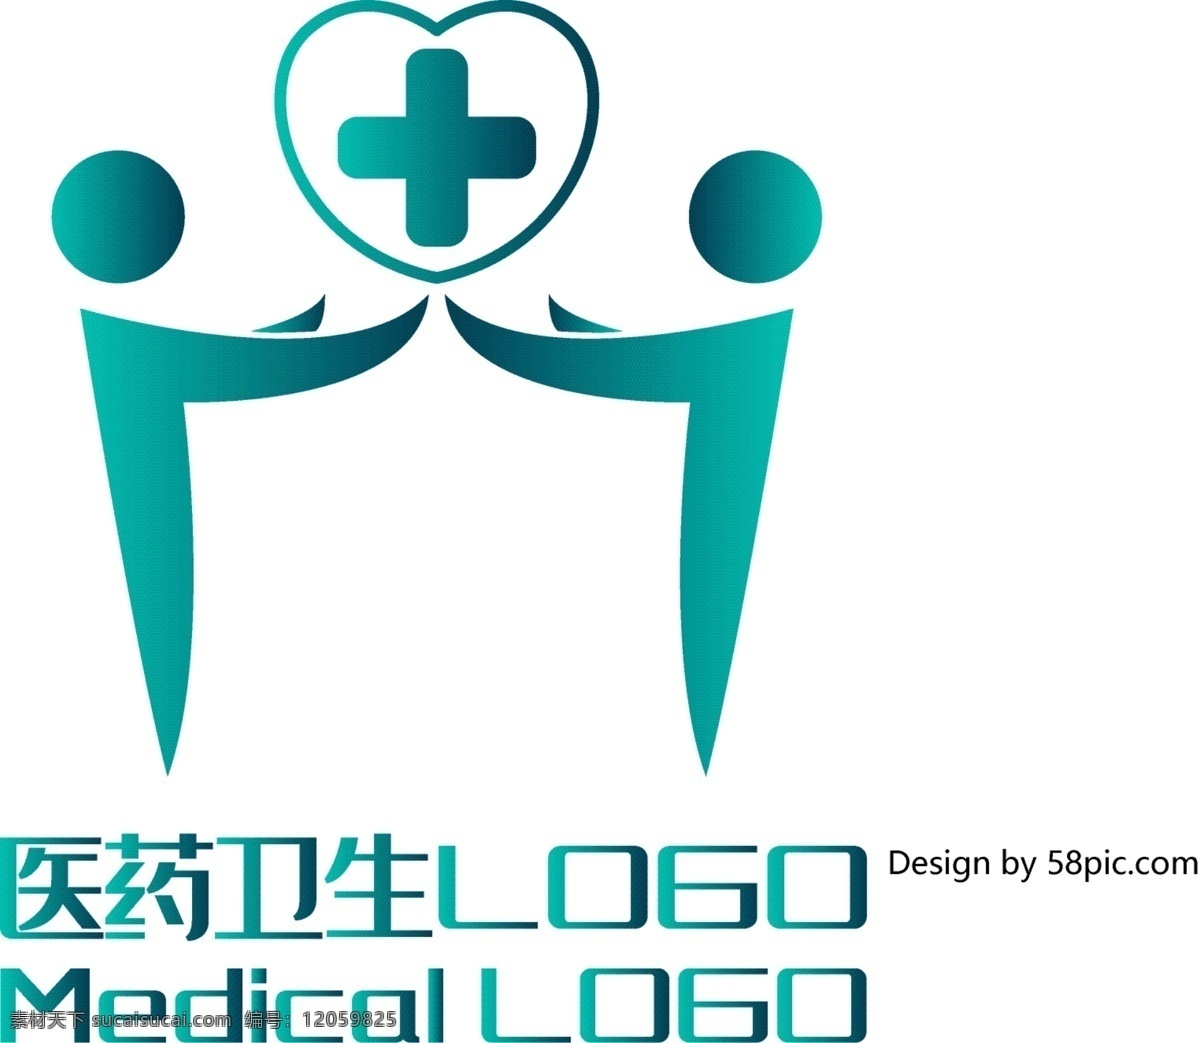 原创 创意 简约 h 字 小人 爱心 医药卫生 logo 可商用 字体设计 医药 卫生 标志